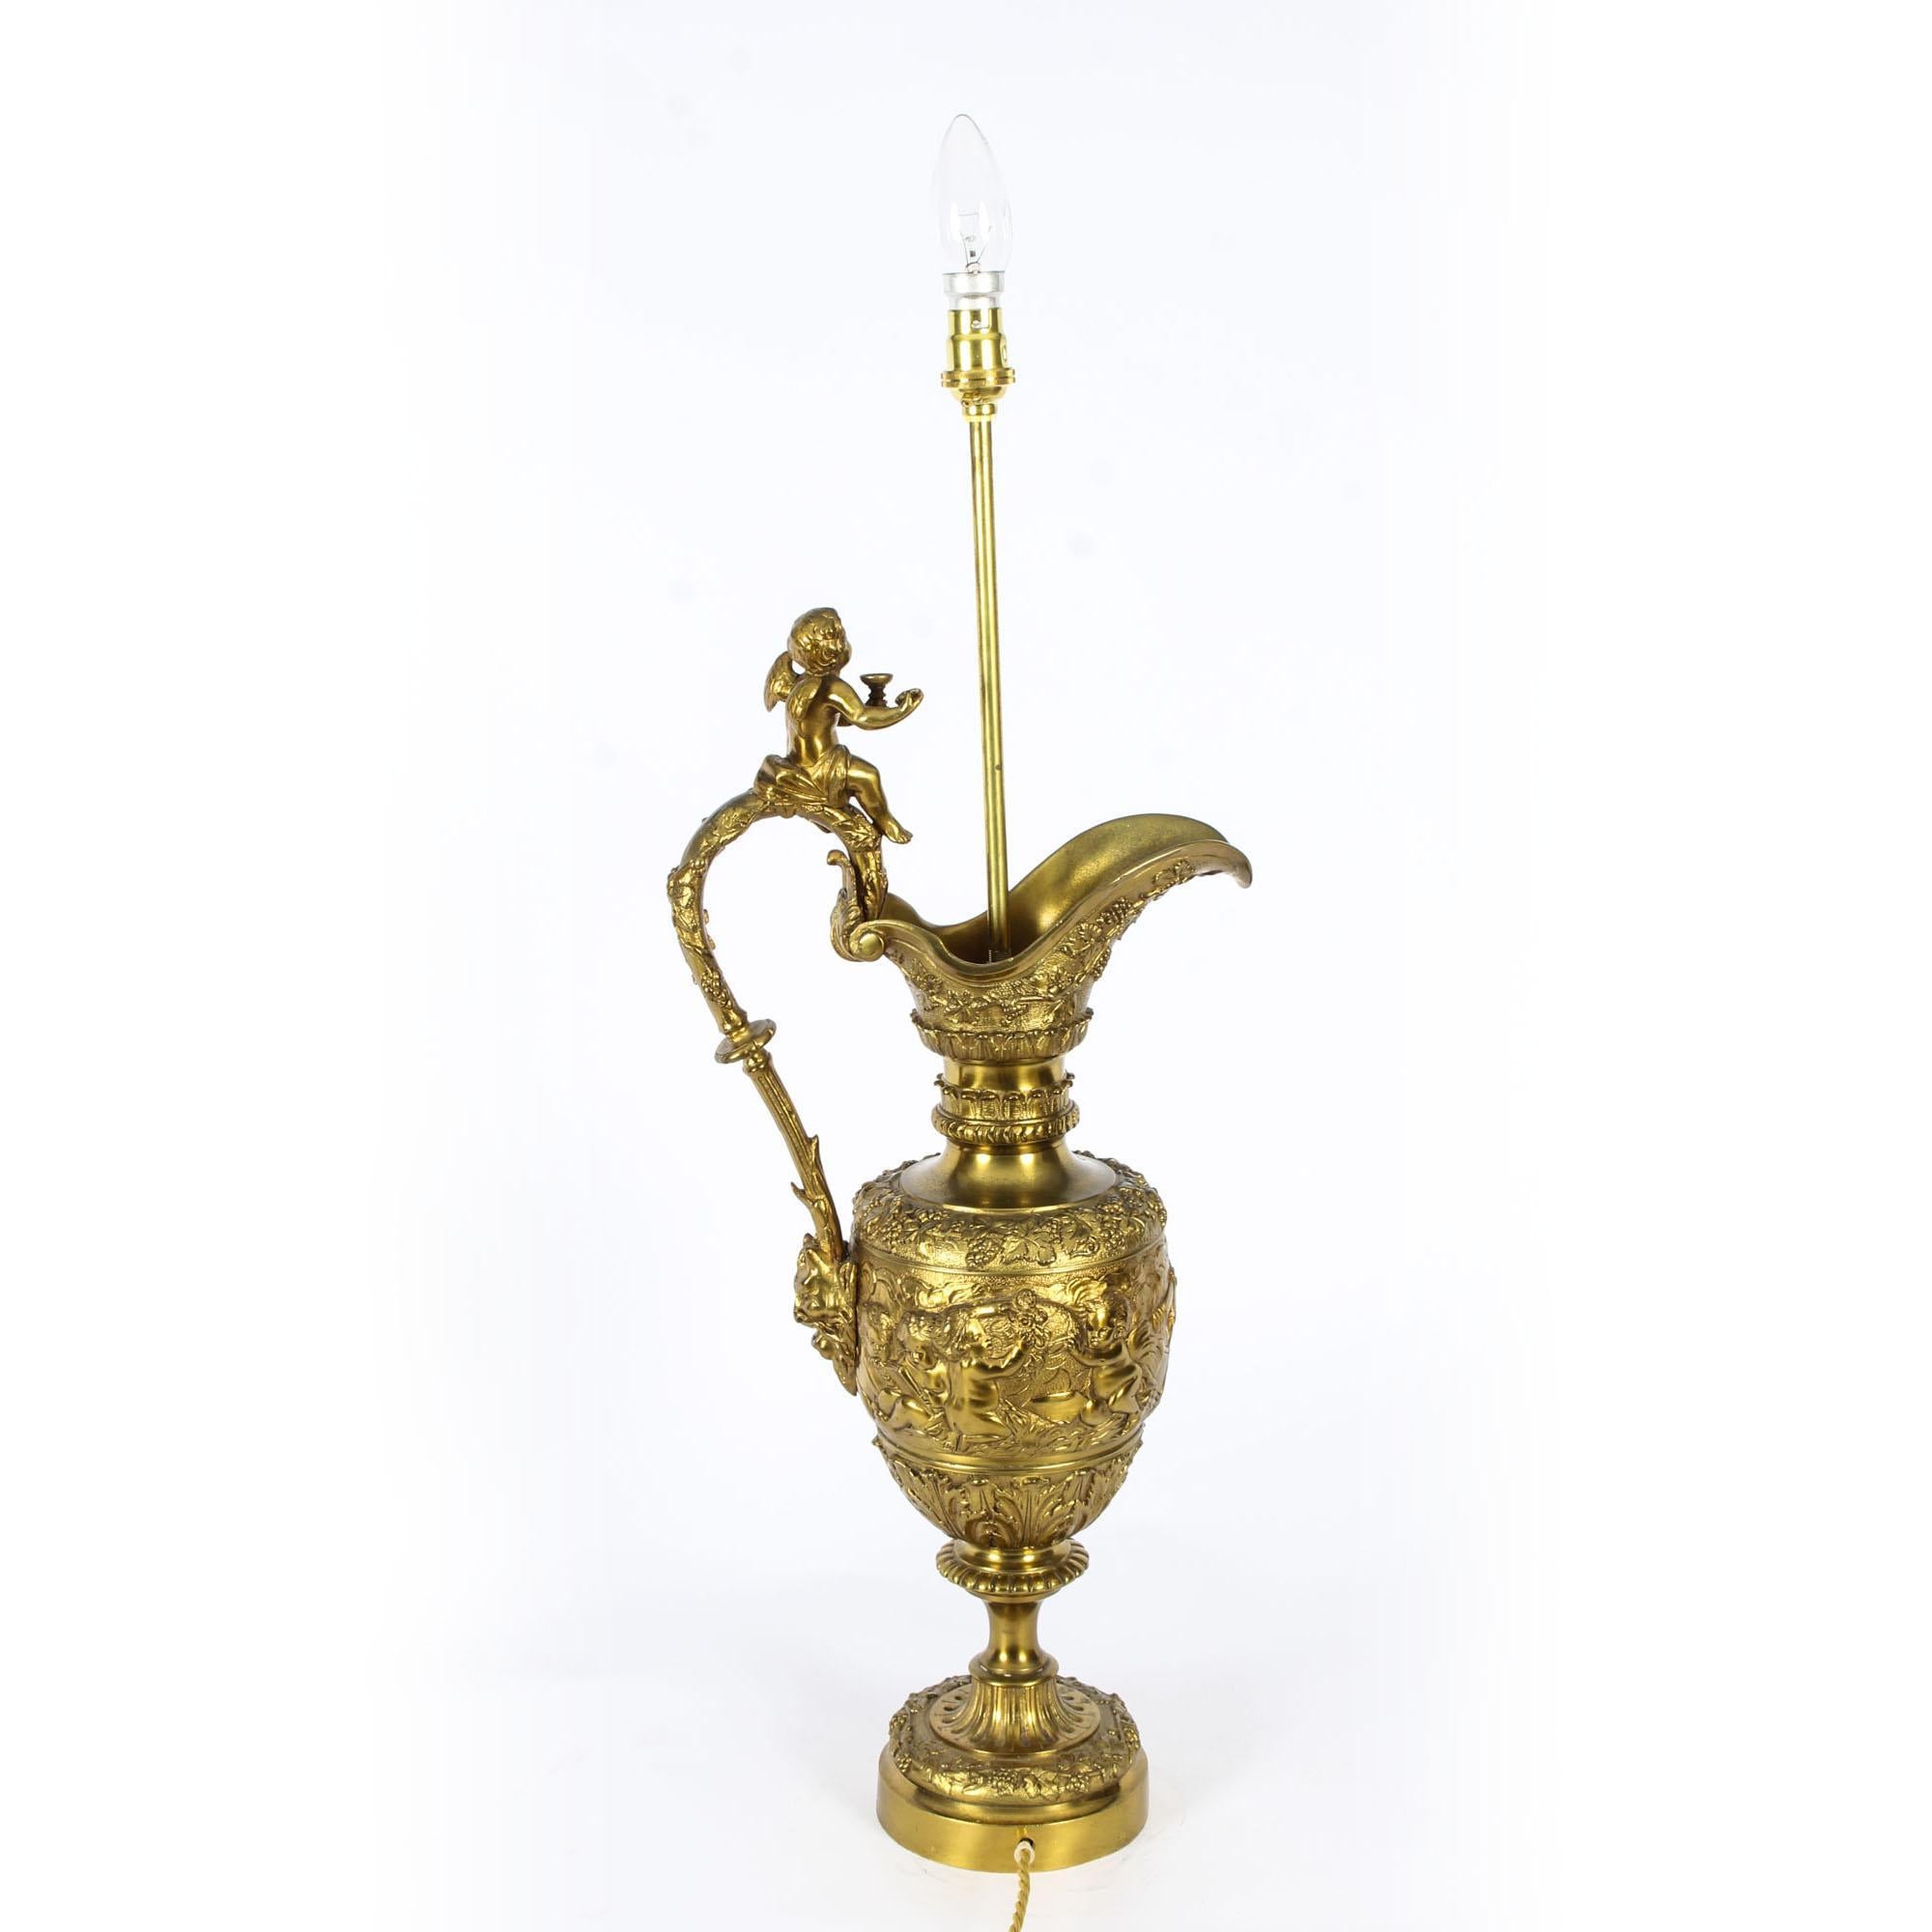 Il s'agit d'une superbe grande lampe de table en bronze doré de style néo-Renaissance, datant d'environ 1870.

Elle est moulée en relief avec des vignes, des chérubins et des feuilles d'acanthe, l'anse serpentine s'élevant vers un amorini ailé